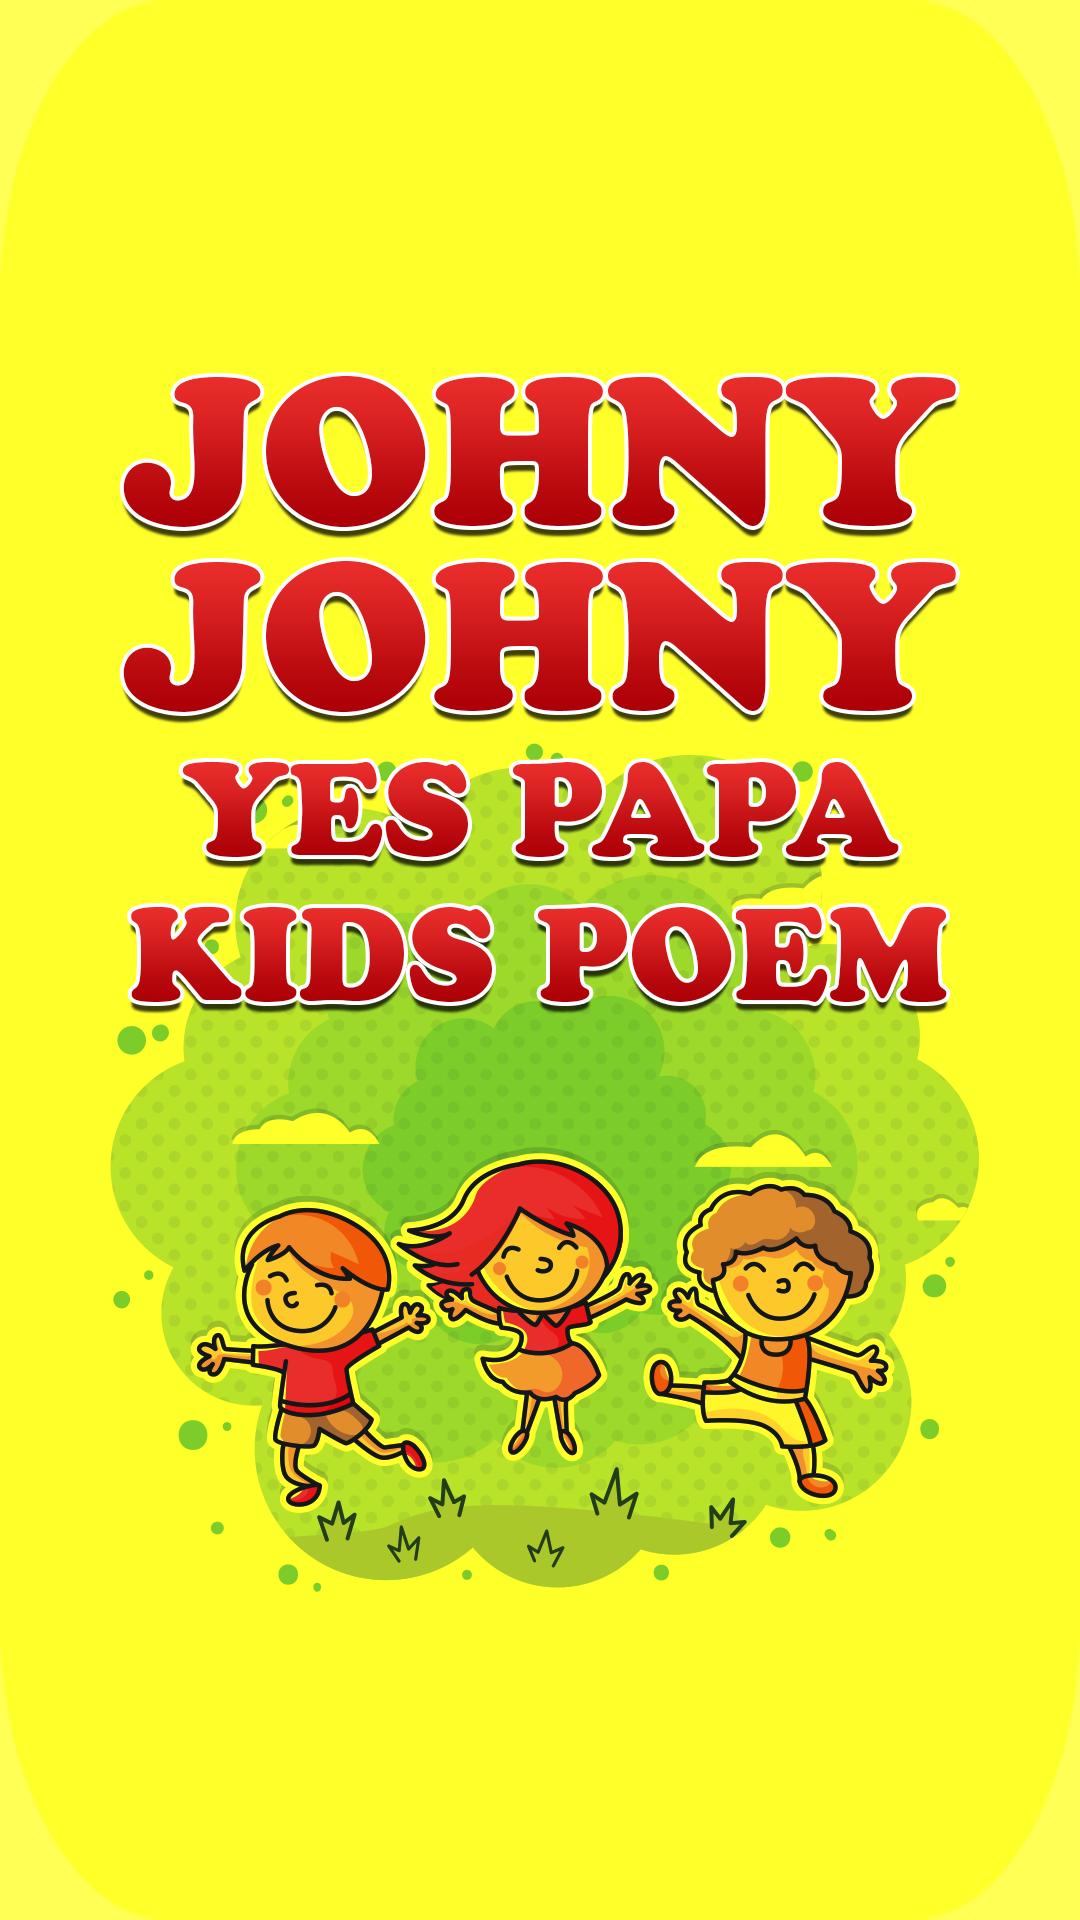 Johny Johny Yes Papa Lyrics Pdf